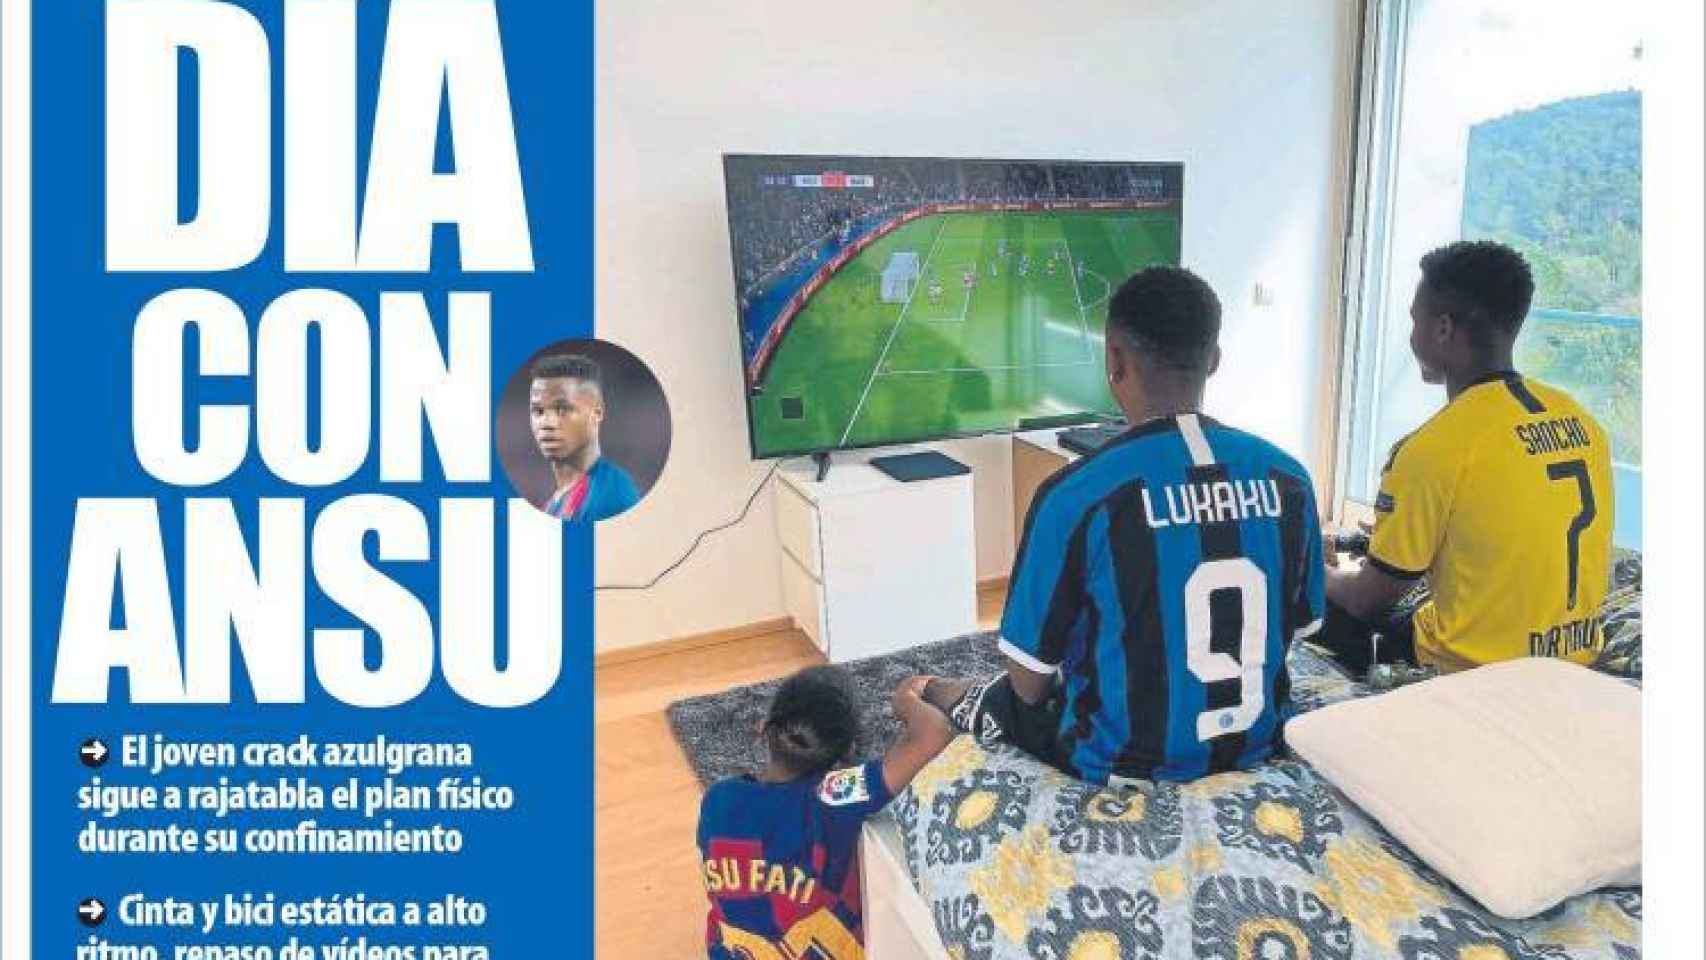 La portada del diario Mundo Deportivo (30/03/2020)